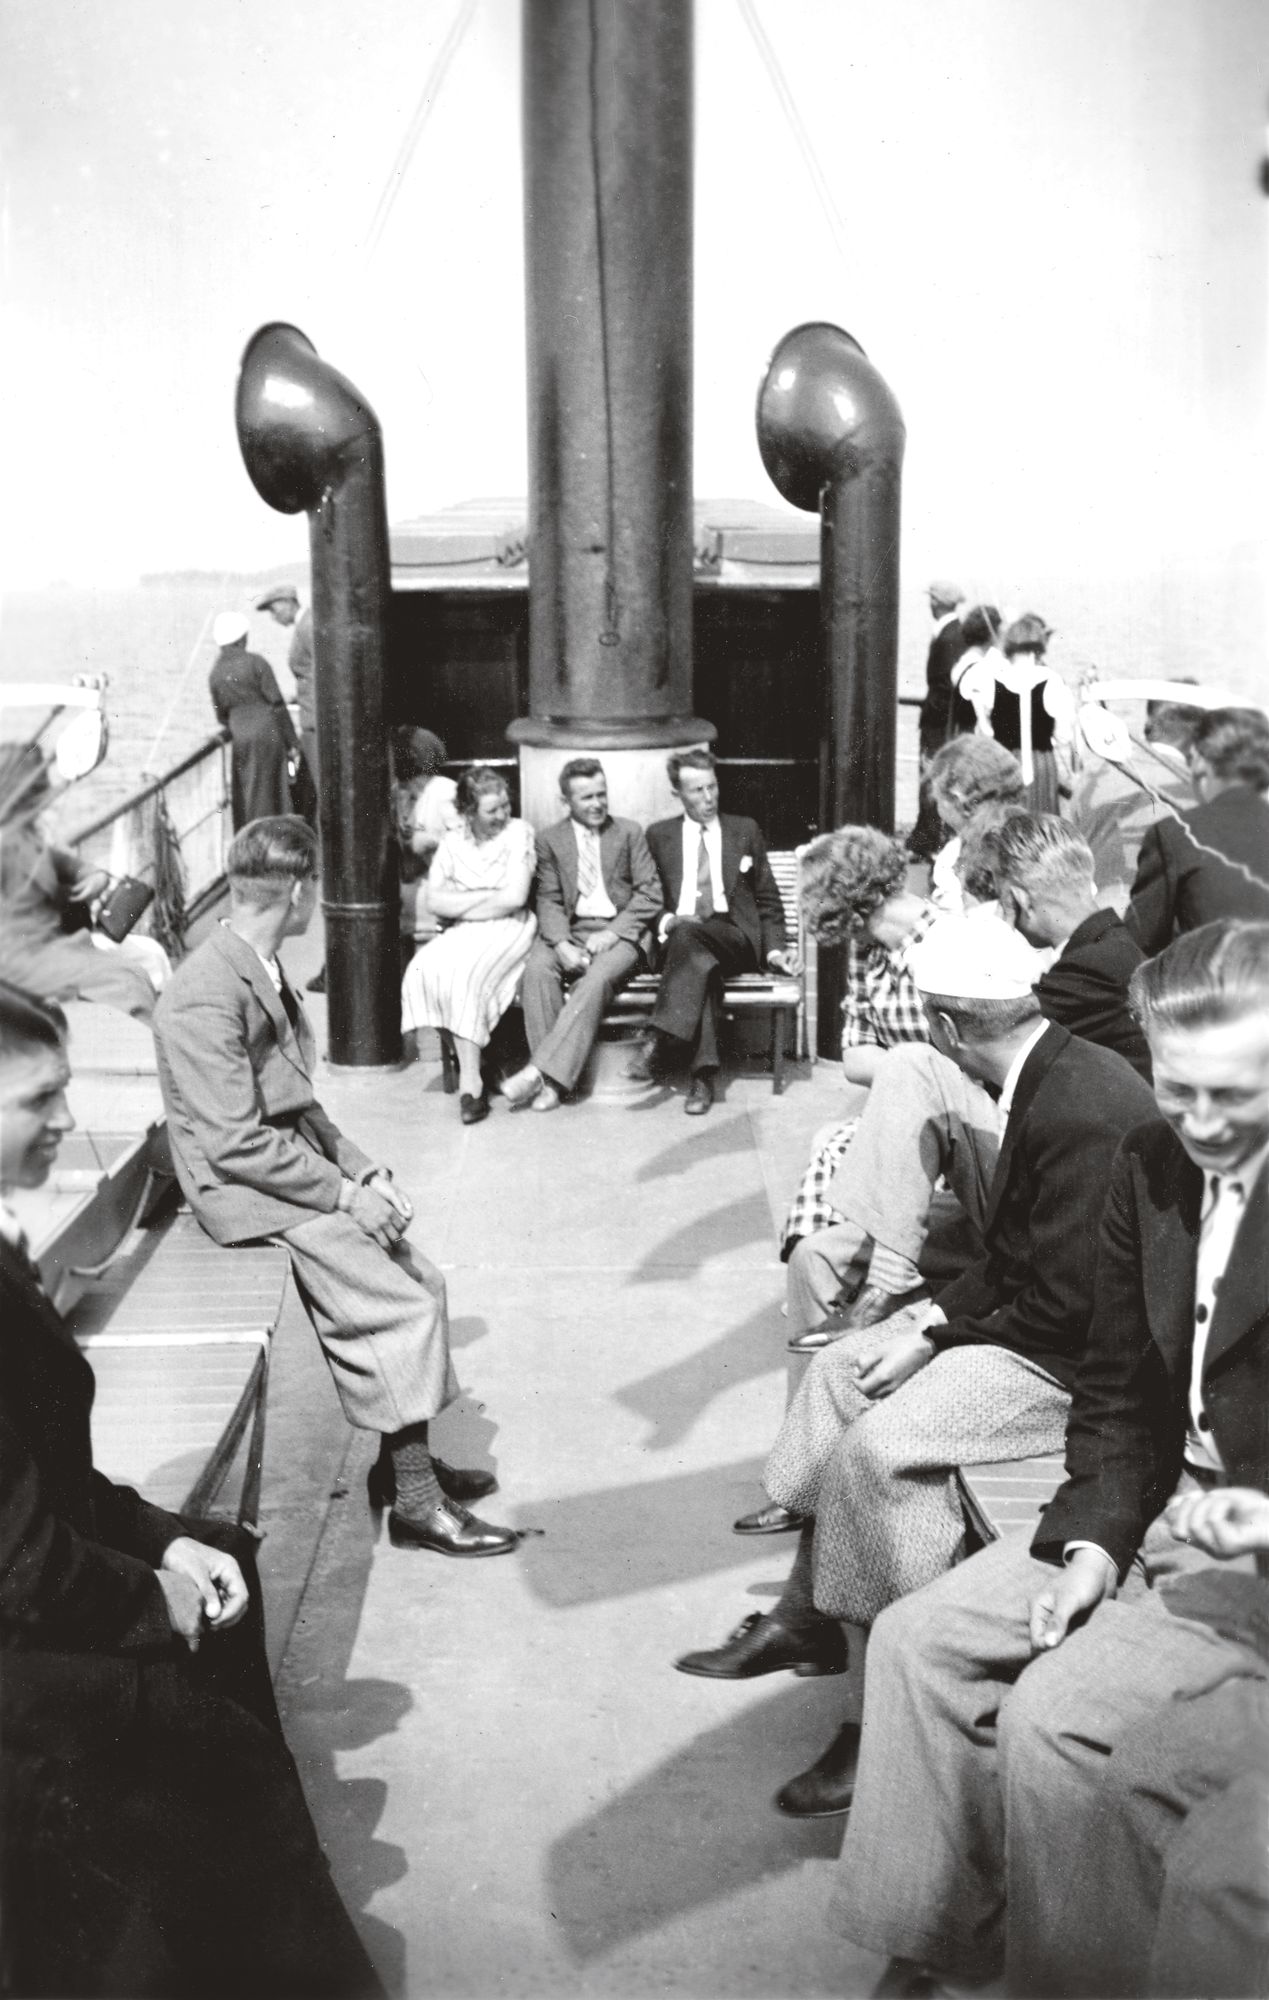 Ihmisiä laivalla Saimaalla 1940-luvulla